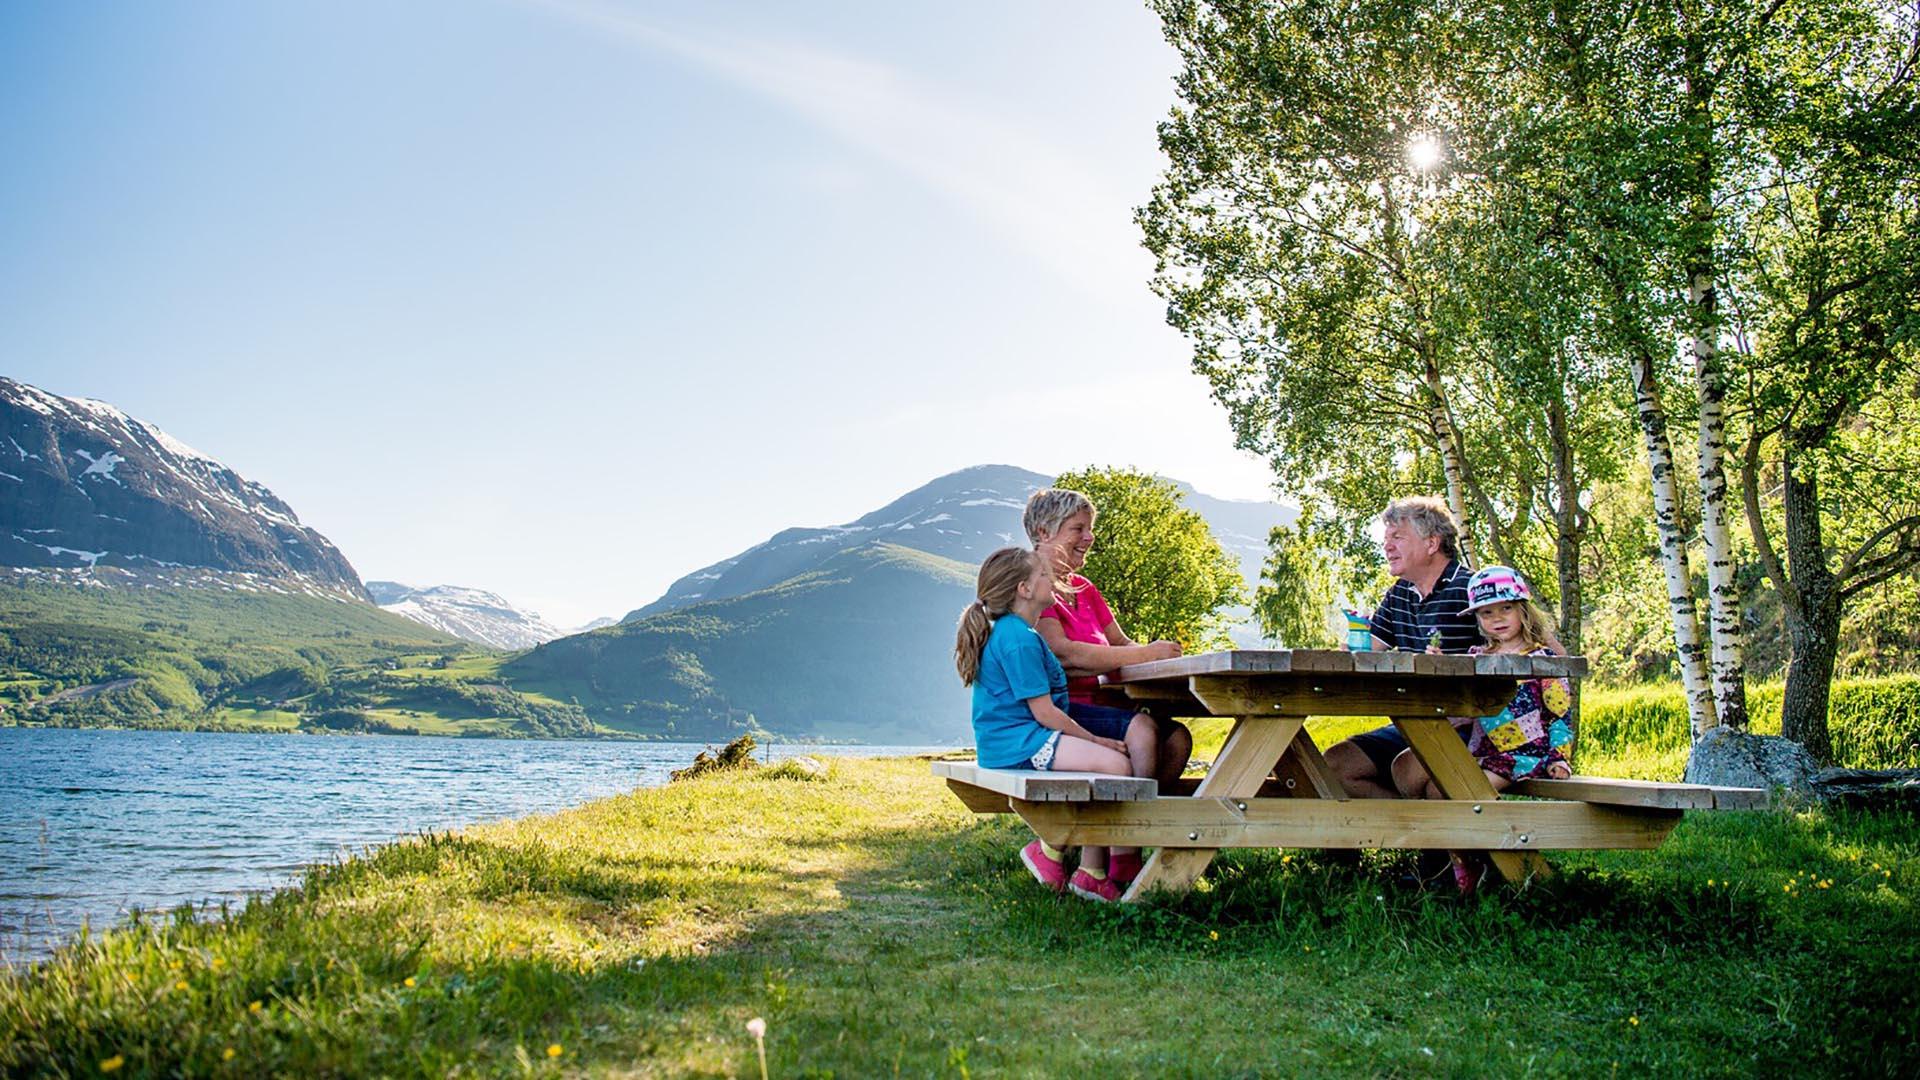 Eine Familie sitzt an einem Holztisch mit Bänken auf einem grasigen Rastplatz an einem See unter einer Birke. Im Hintergrund sieht man Berge.